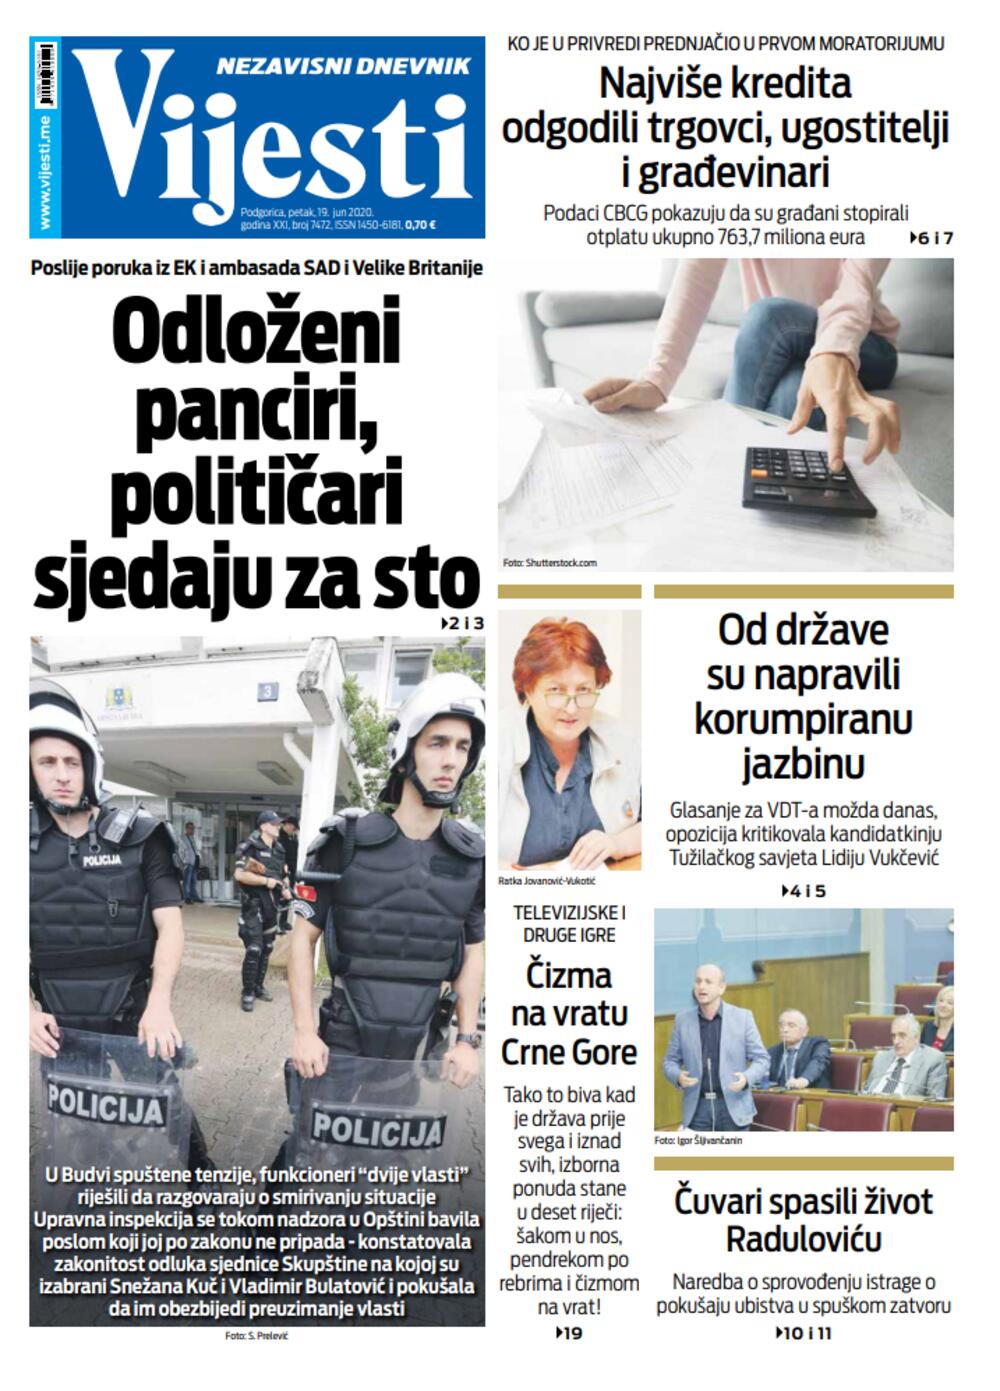 Naslovna strana "Vijesti" za 19. jun 2020., Foto: Vijesti